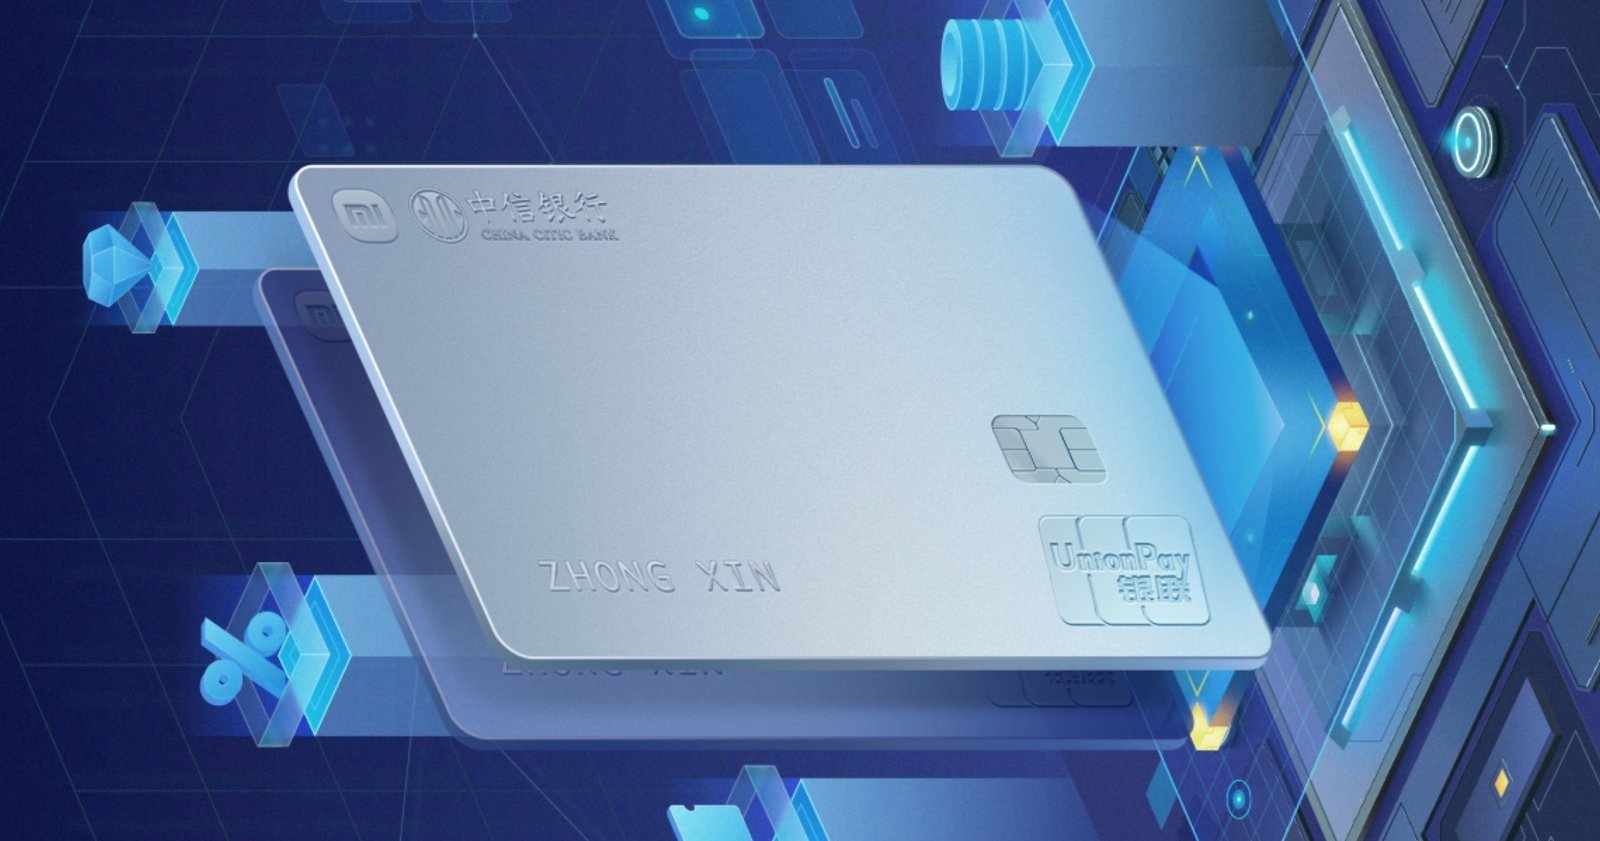 Xiaomi lanza su propia tarjeta de crédito con ventajas exclusivas al estilo Apple Card